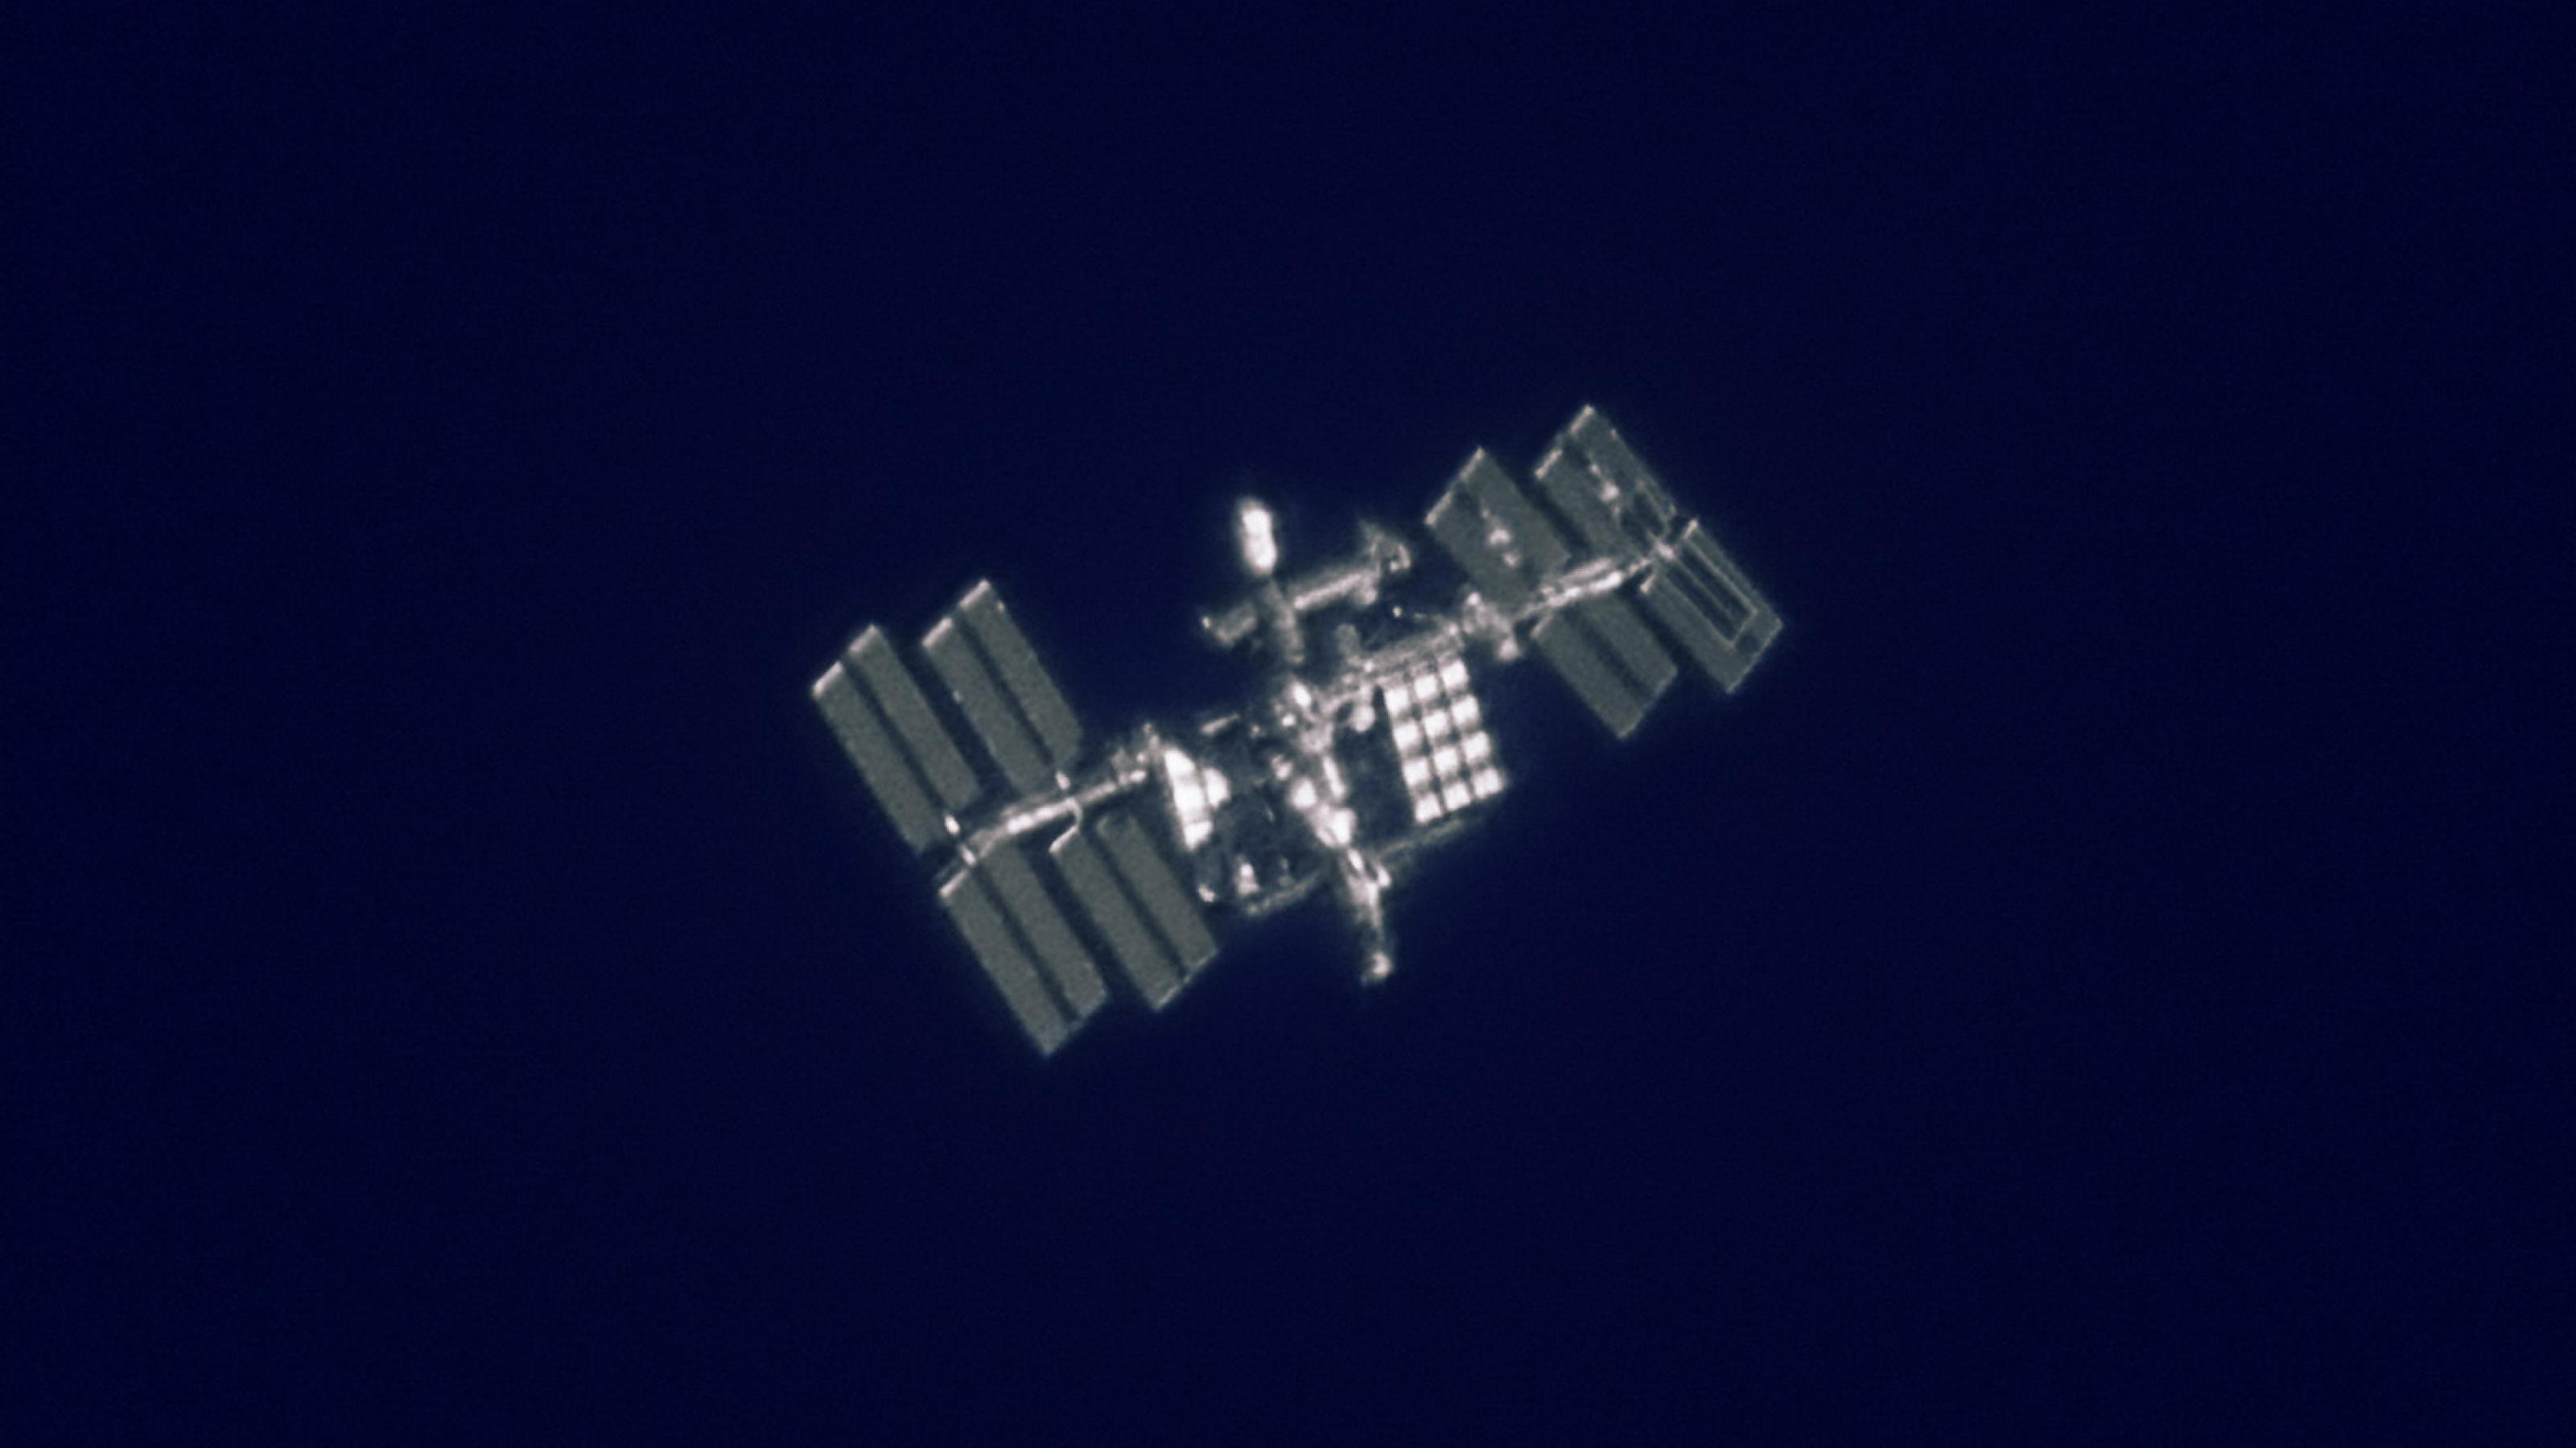 Detailreiche Strukturen an der Internationalen Raumstation ISS wie Solarpaneele und Arbeitsmodule lassen sich auch von der Erde aus fotografieren; selbst zwei Astronauten bei einem Außenbordeinsatz sind zu erkennen.